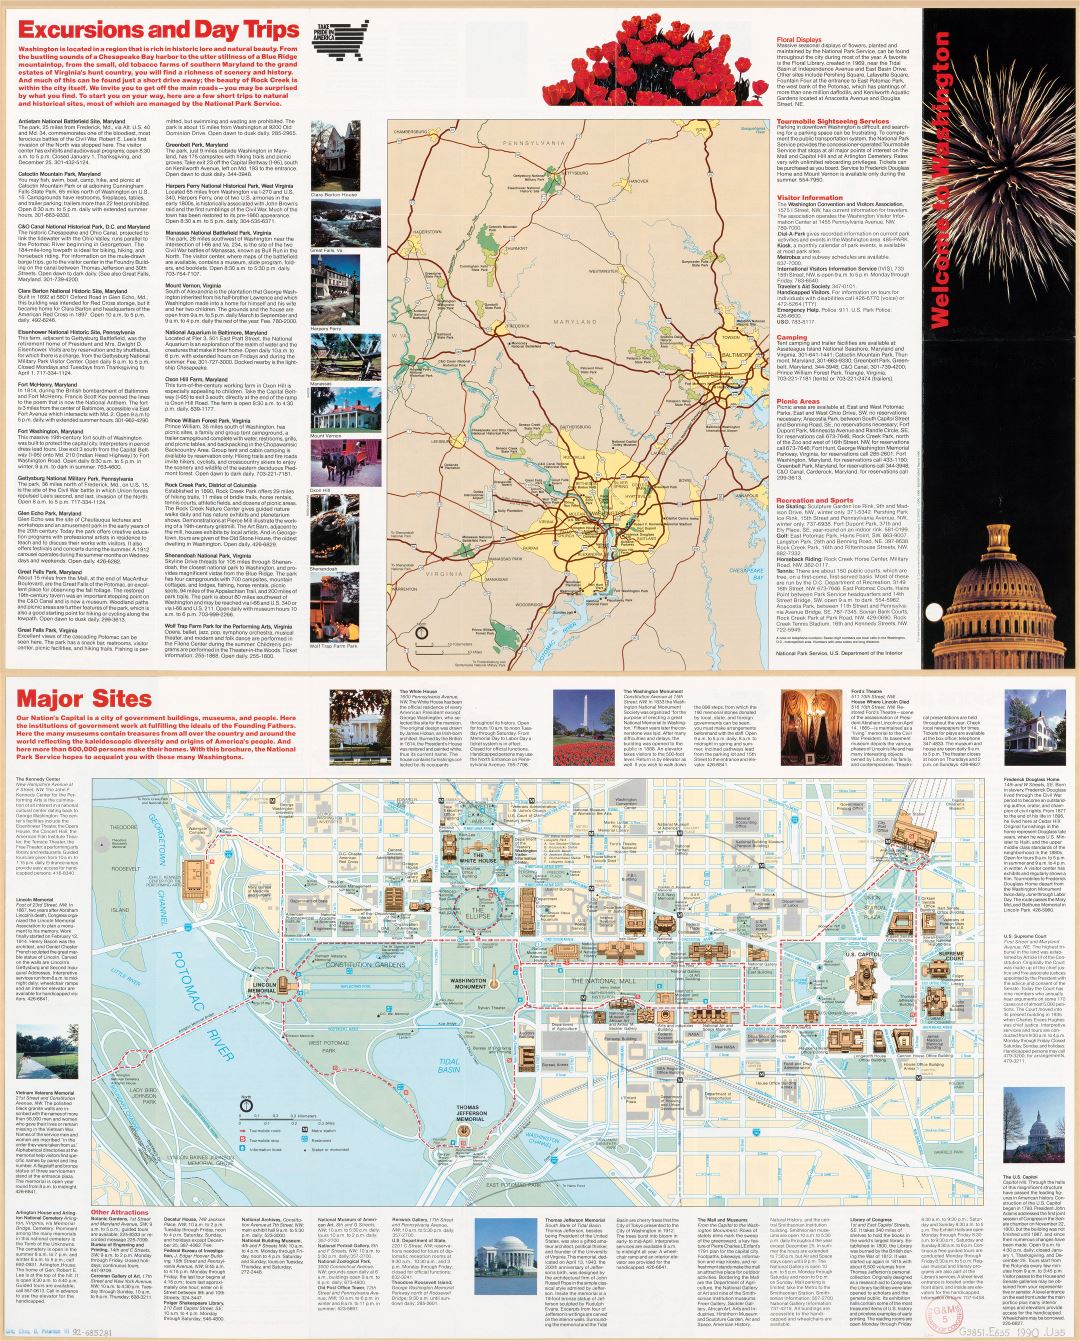 Large scale detailed Washington D.C. tourist map - 1990